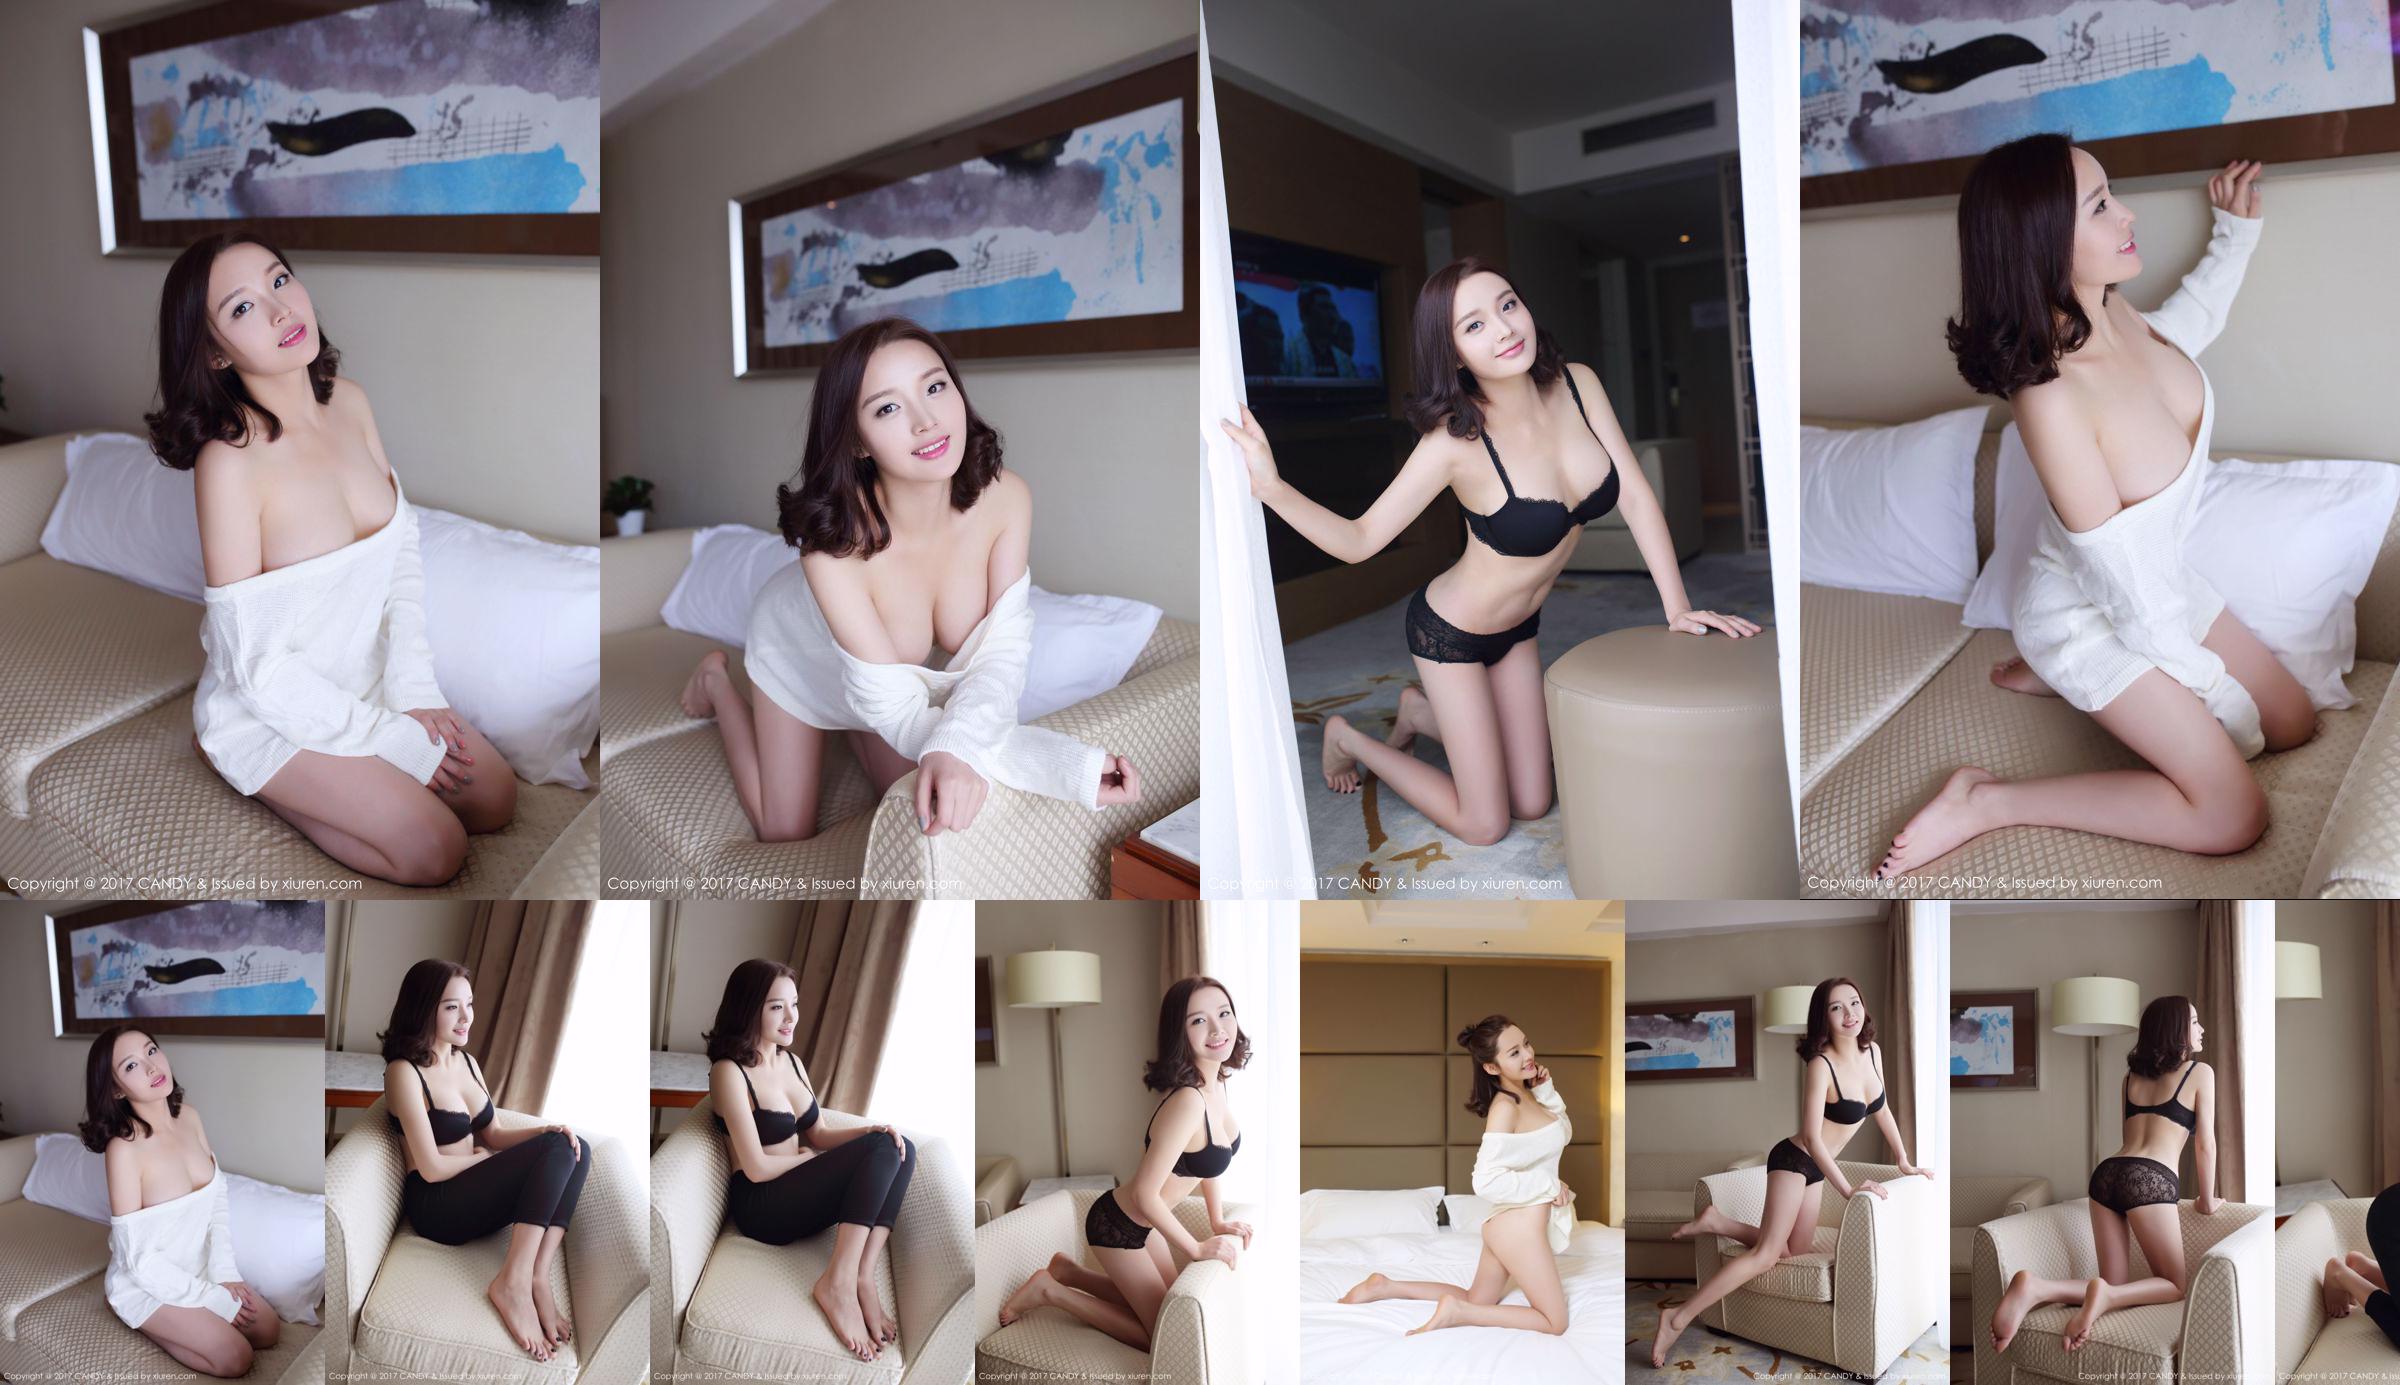 Wang Shiqi "La bella ragazza della porta accanto" [Candy Pictorial CANDY] Vol.033 No.55e75a Pagina 2